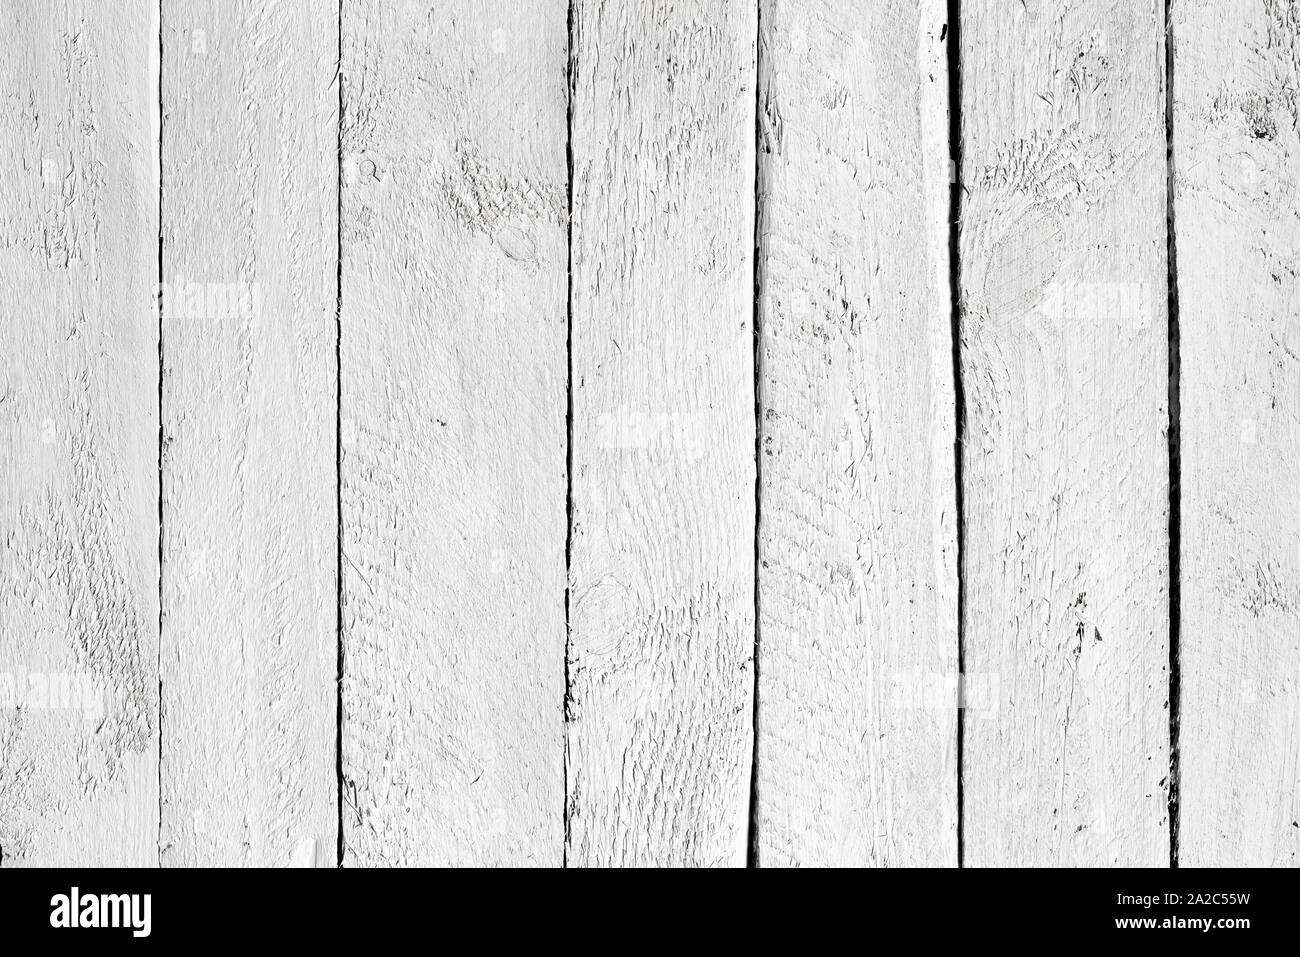 White wood planks background Stock Photo